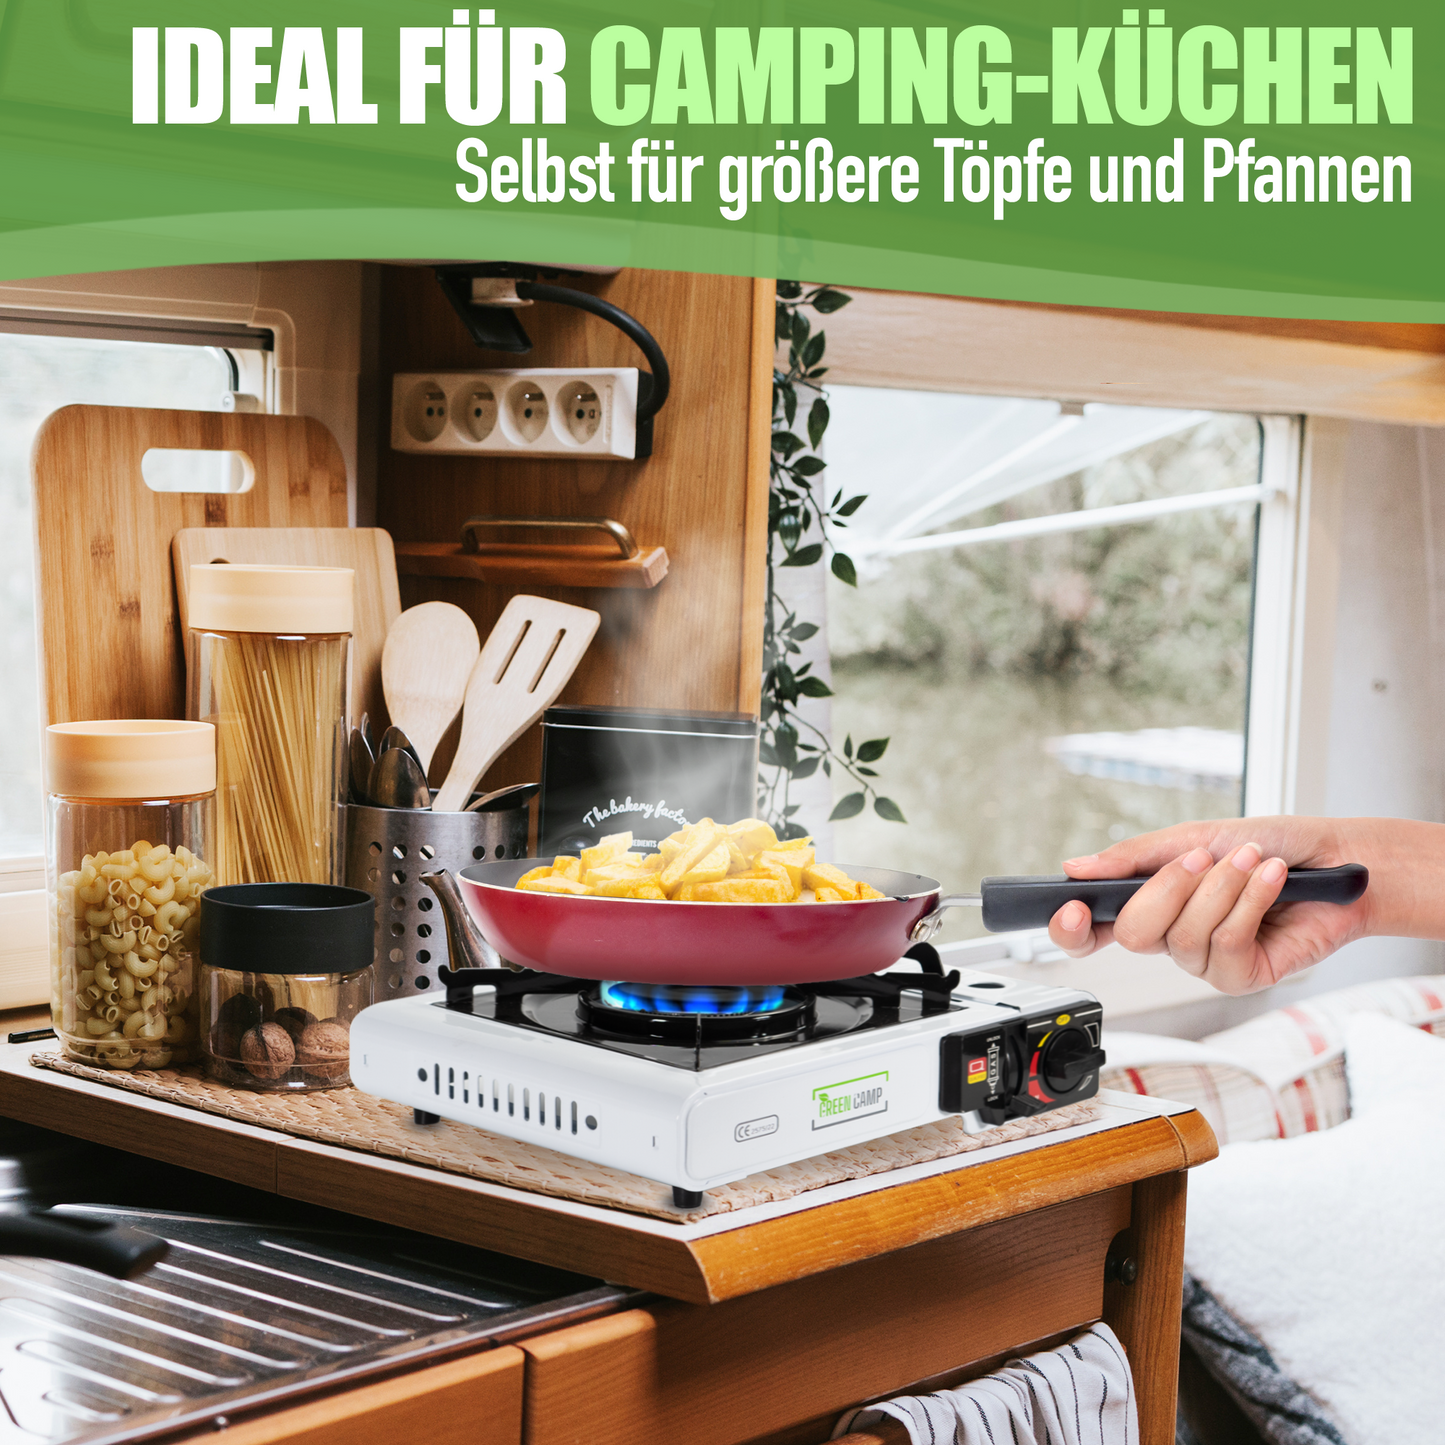 Camping Gaskocher Campingkocher + 8x Gaskartuschen + Grillaufsatz + Koffer